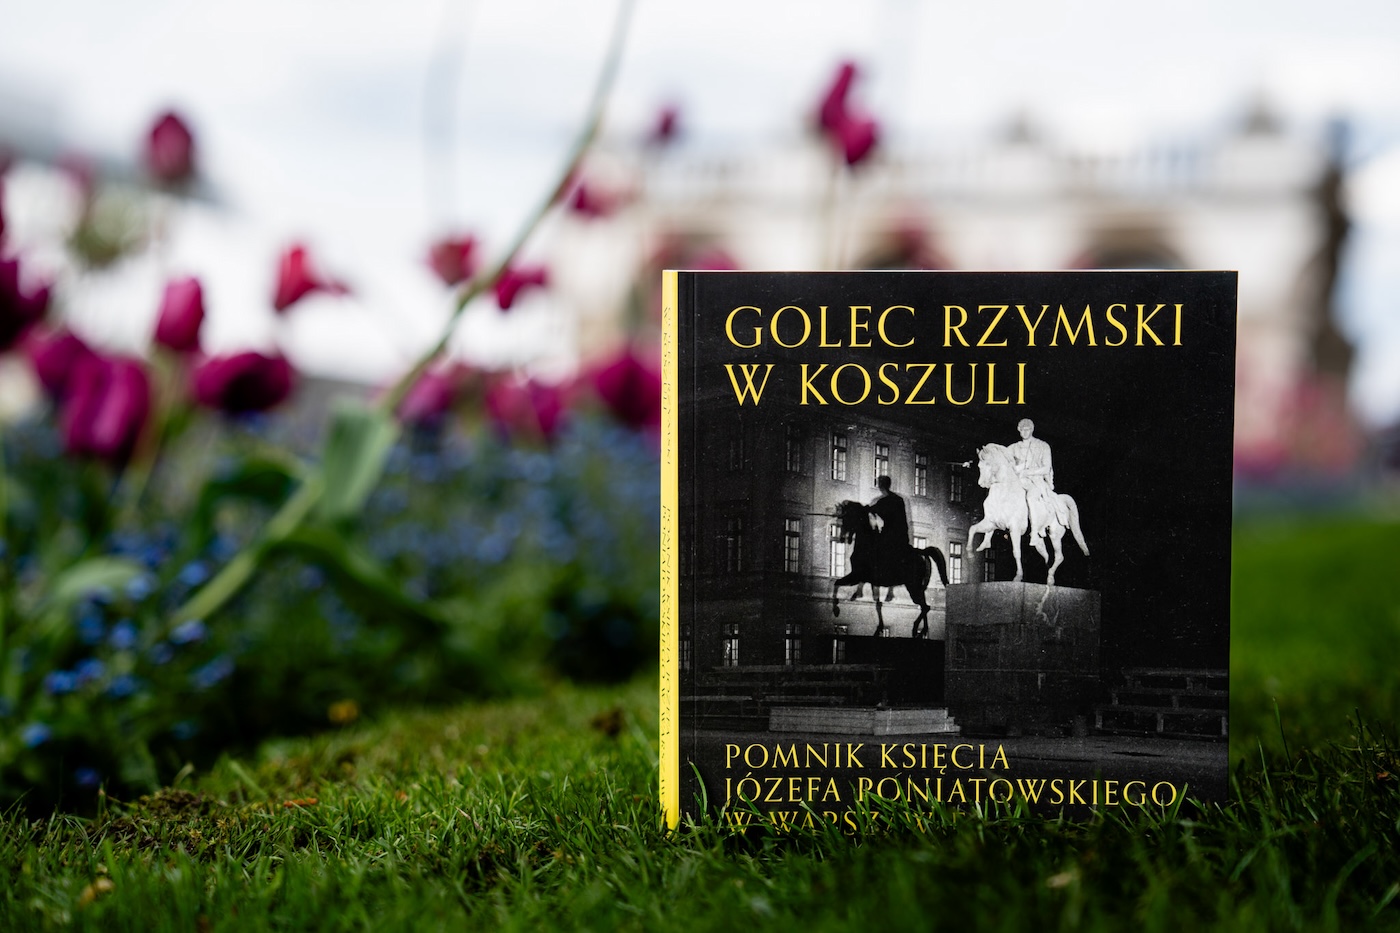 Na pierwszym planie książka o tytule "Golec rzymski w koszuli" ze zdjęciem pomnika konnego księcia Poniatowskiego. Książka oparta jest na przystrzyżonym trawniku. W tle zarys kwiatów.